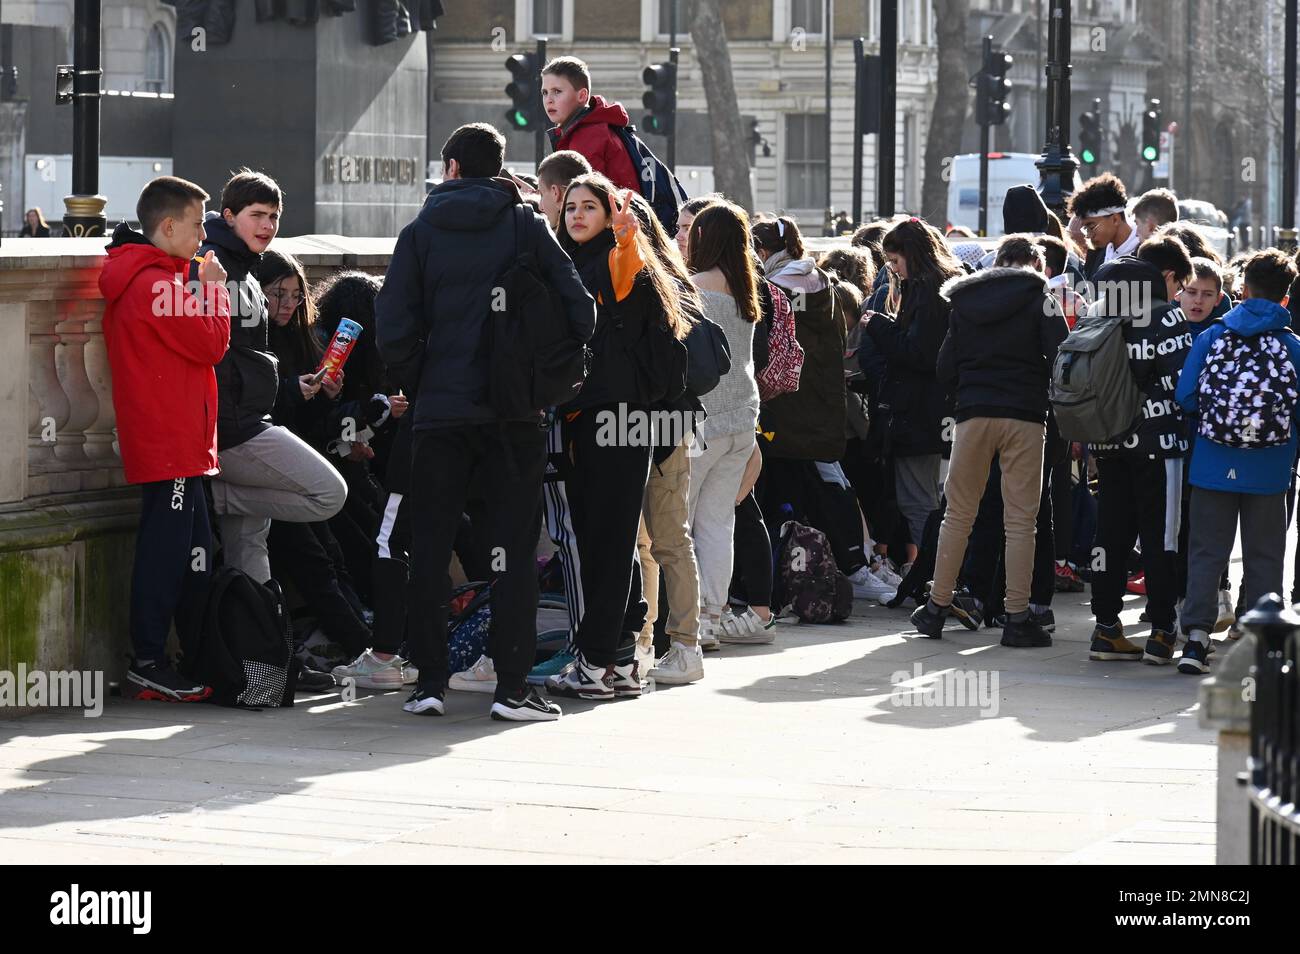 School Party of teenager consente di vedere i punti di riferimento di Whitehall, Westminster, Londra. REGNO UNITO Foto Stock